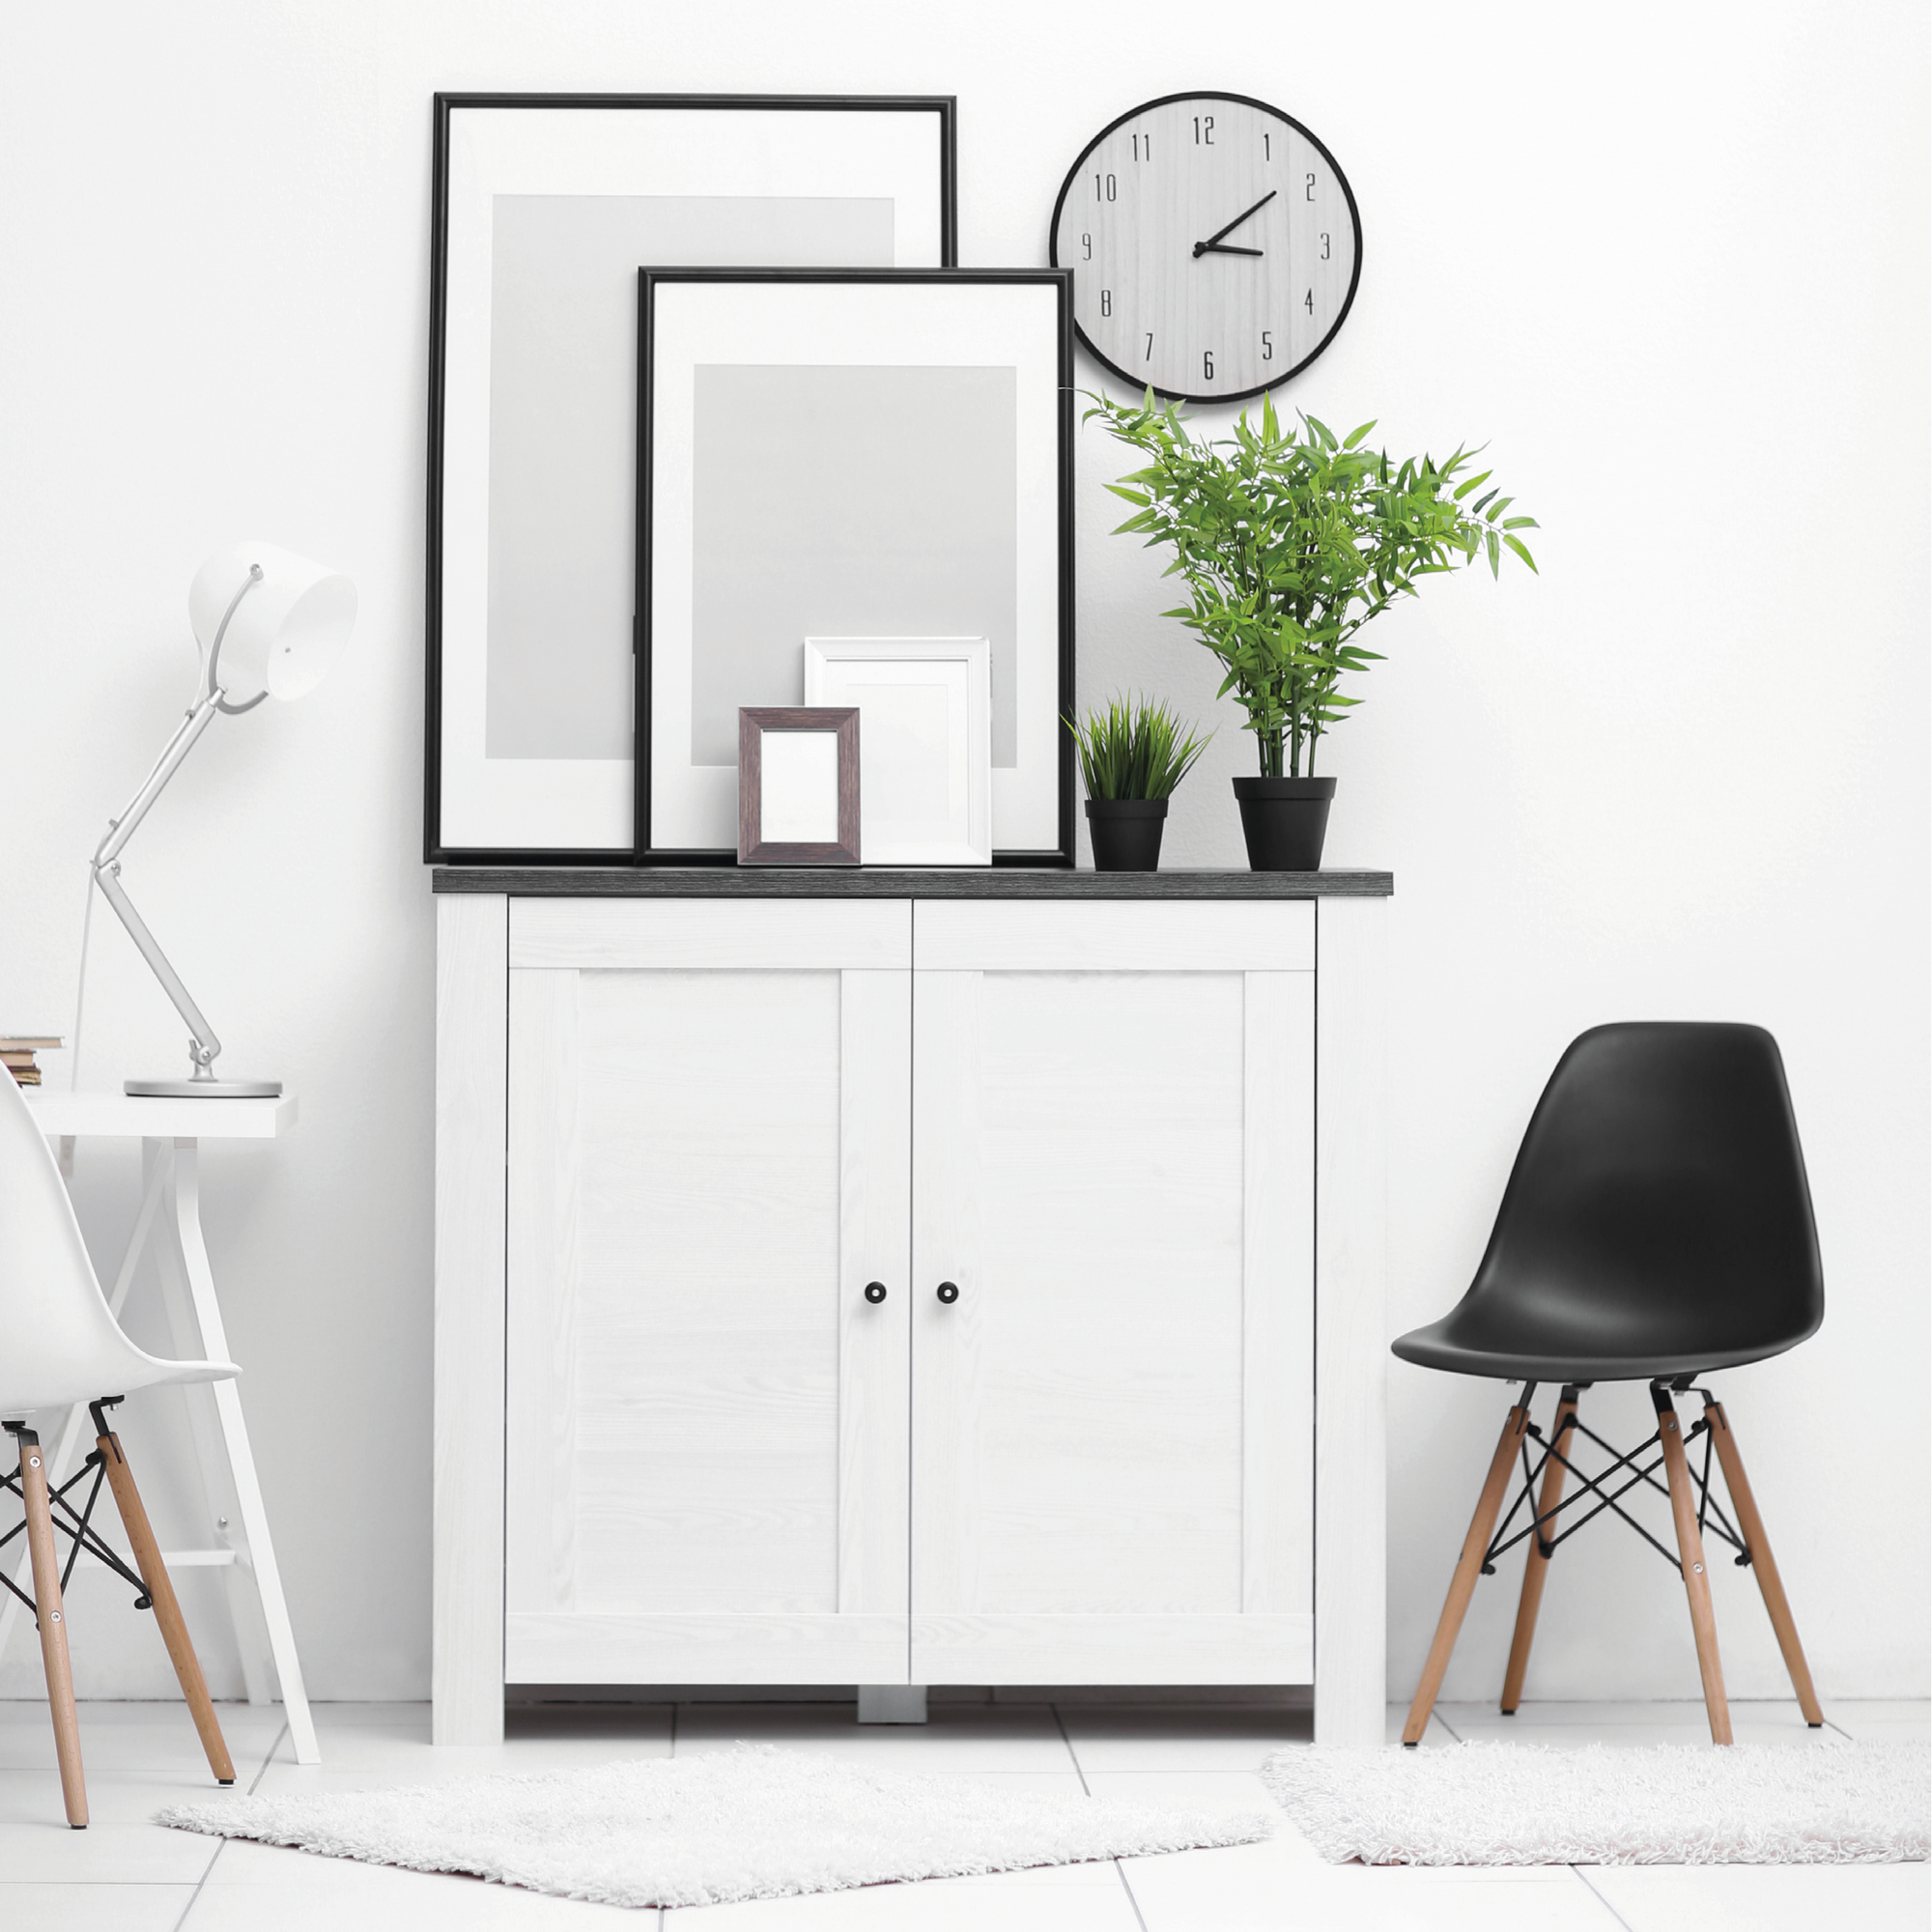 Renovierfarbe für Möbel- und Küchenfronten weiß seidenmatt 2,5 l + product picture